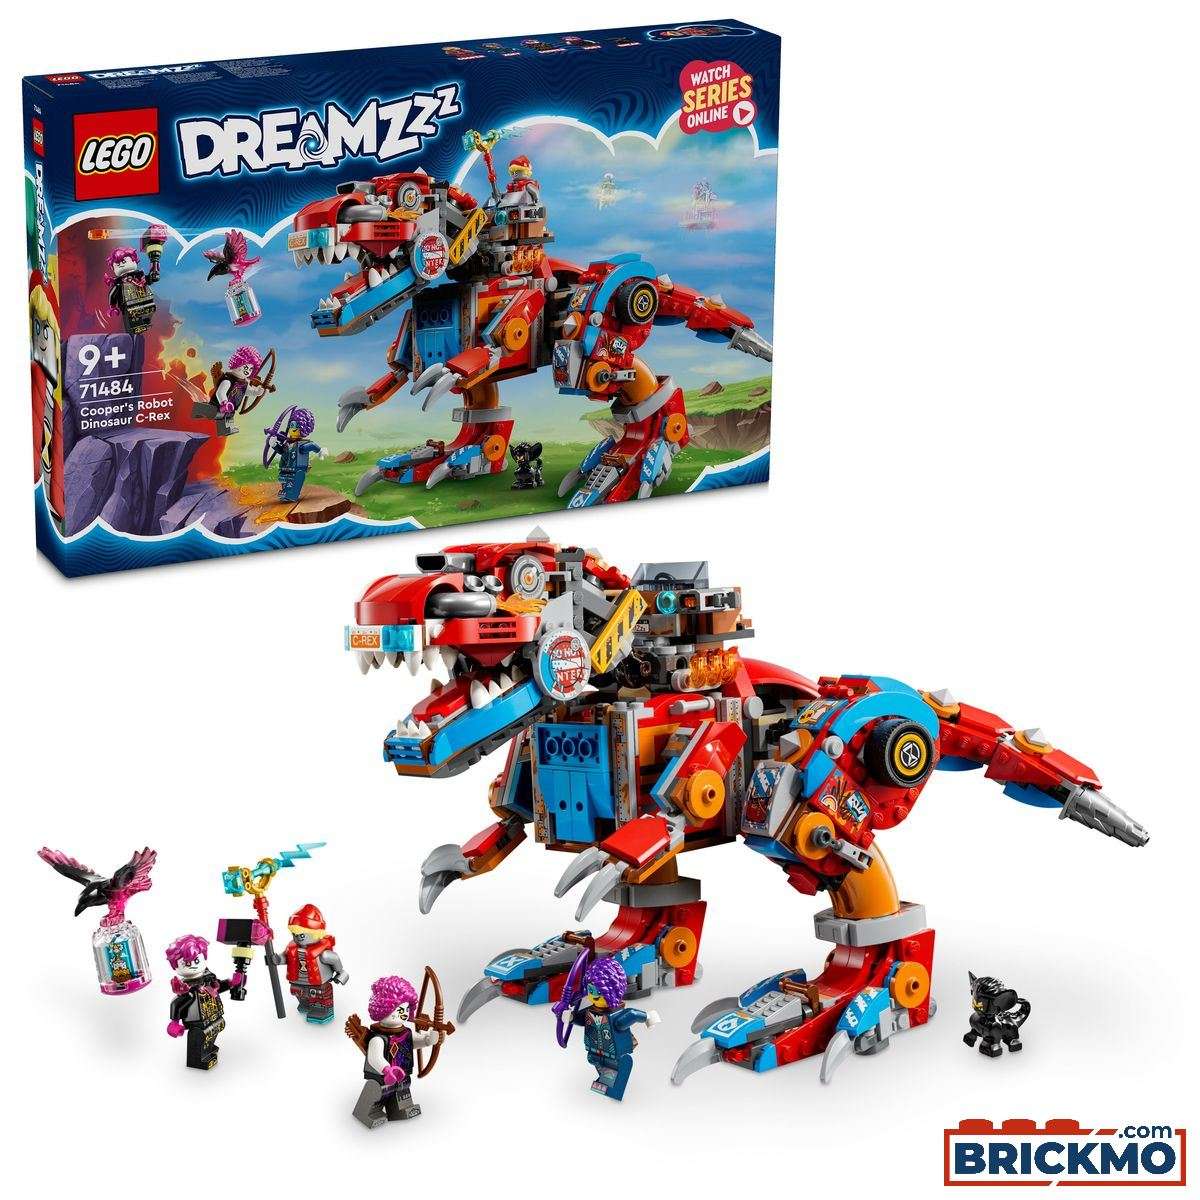 LEGO DreamZzz 71484 Le robot dinosaure C-Rex de Cooper 71484